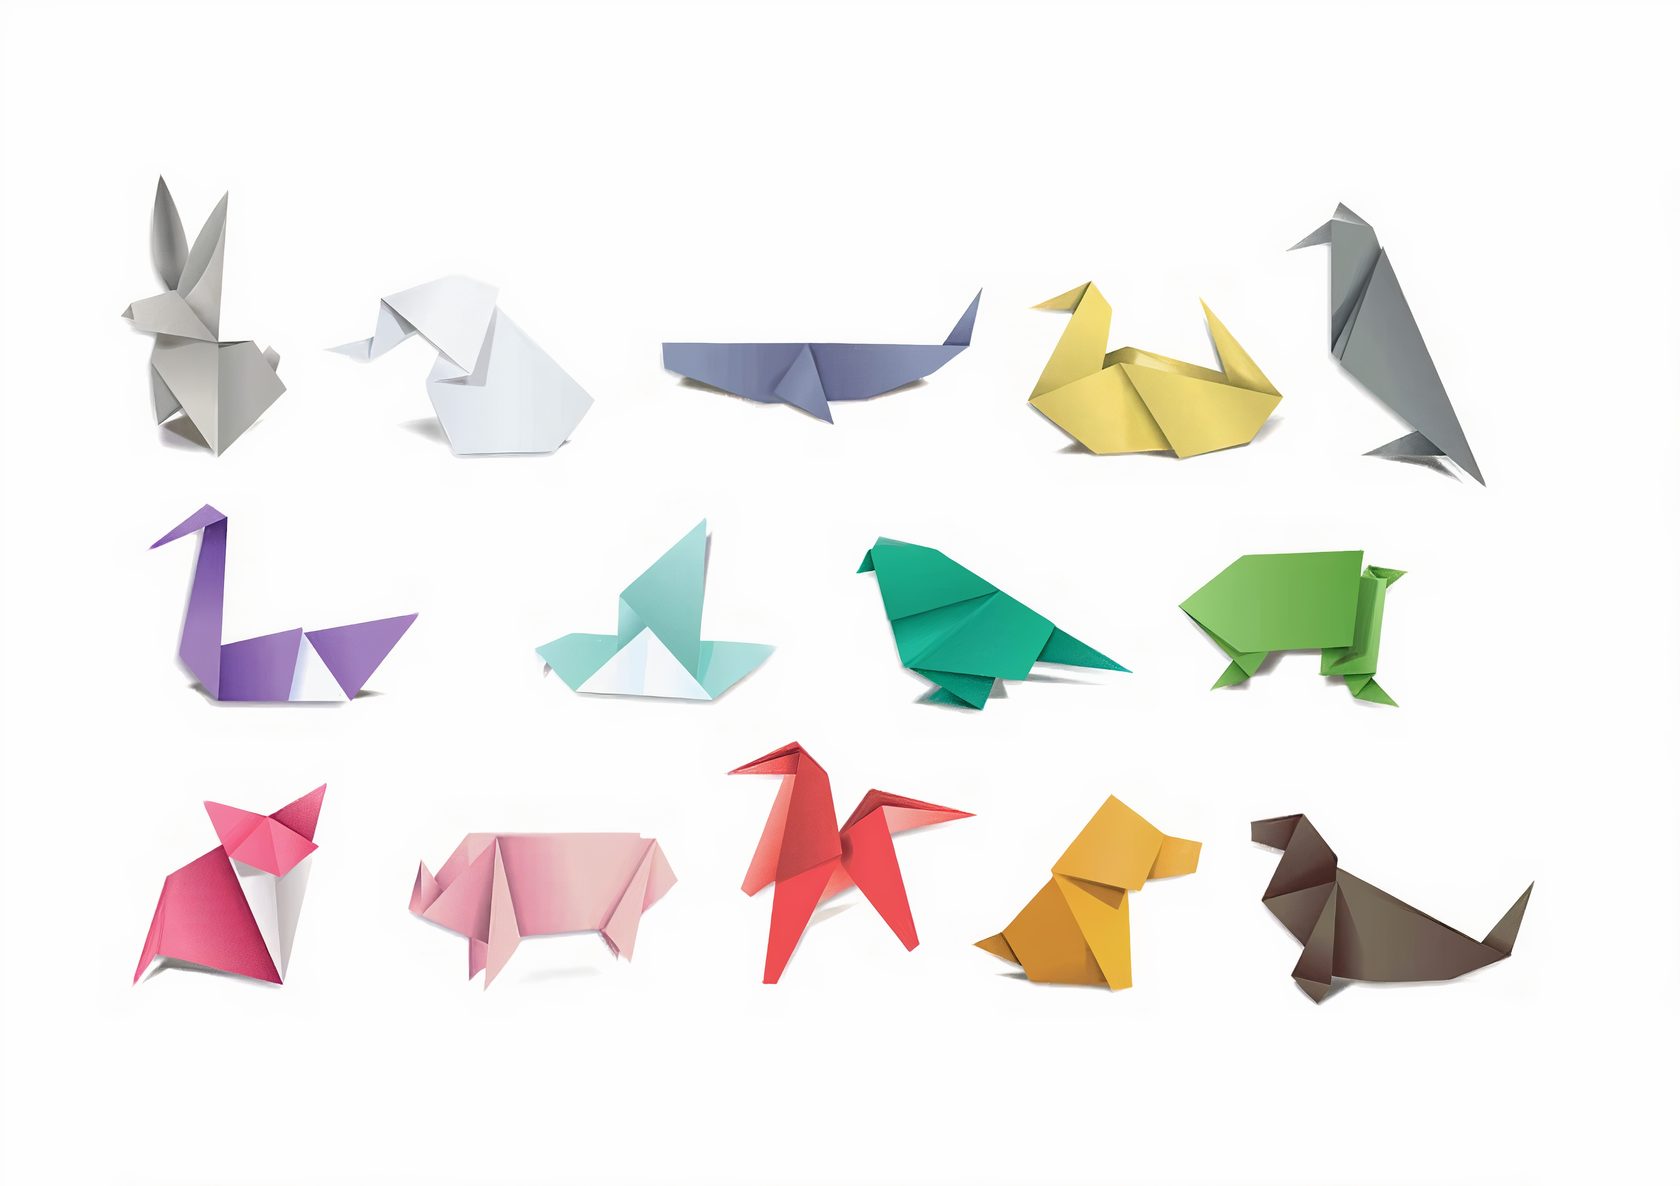 Япония. Оригами - традиция или способ познать окружающий мир?